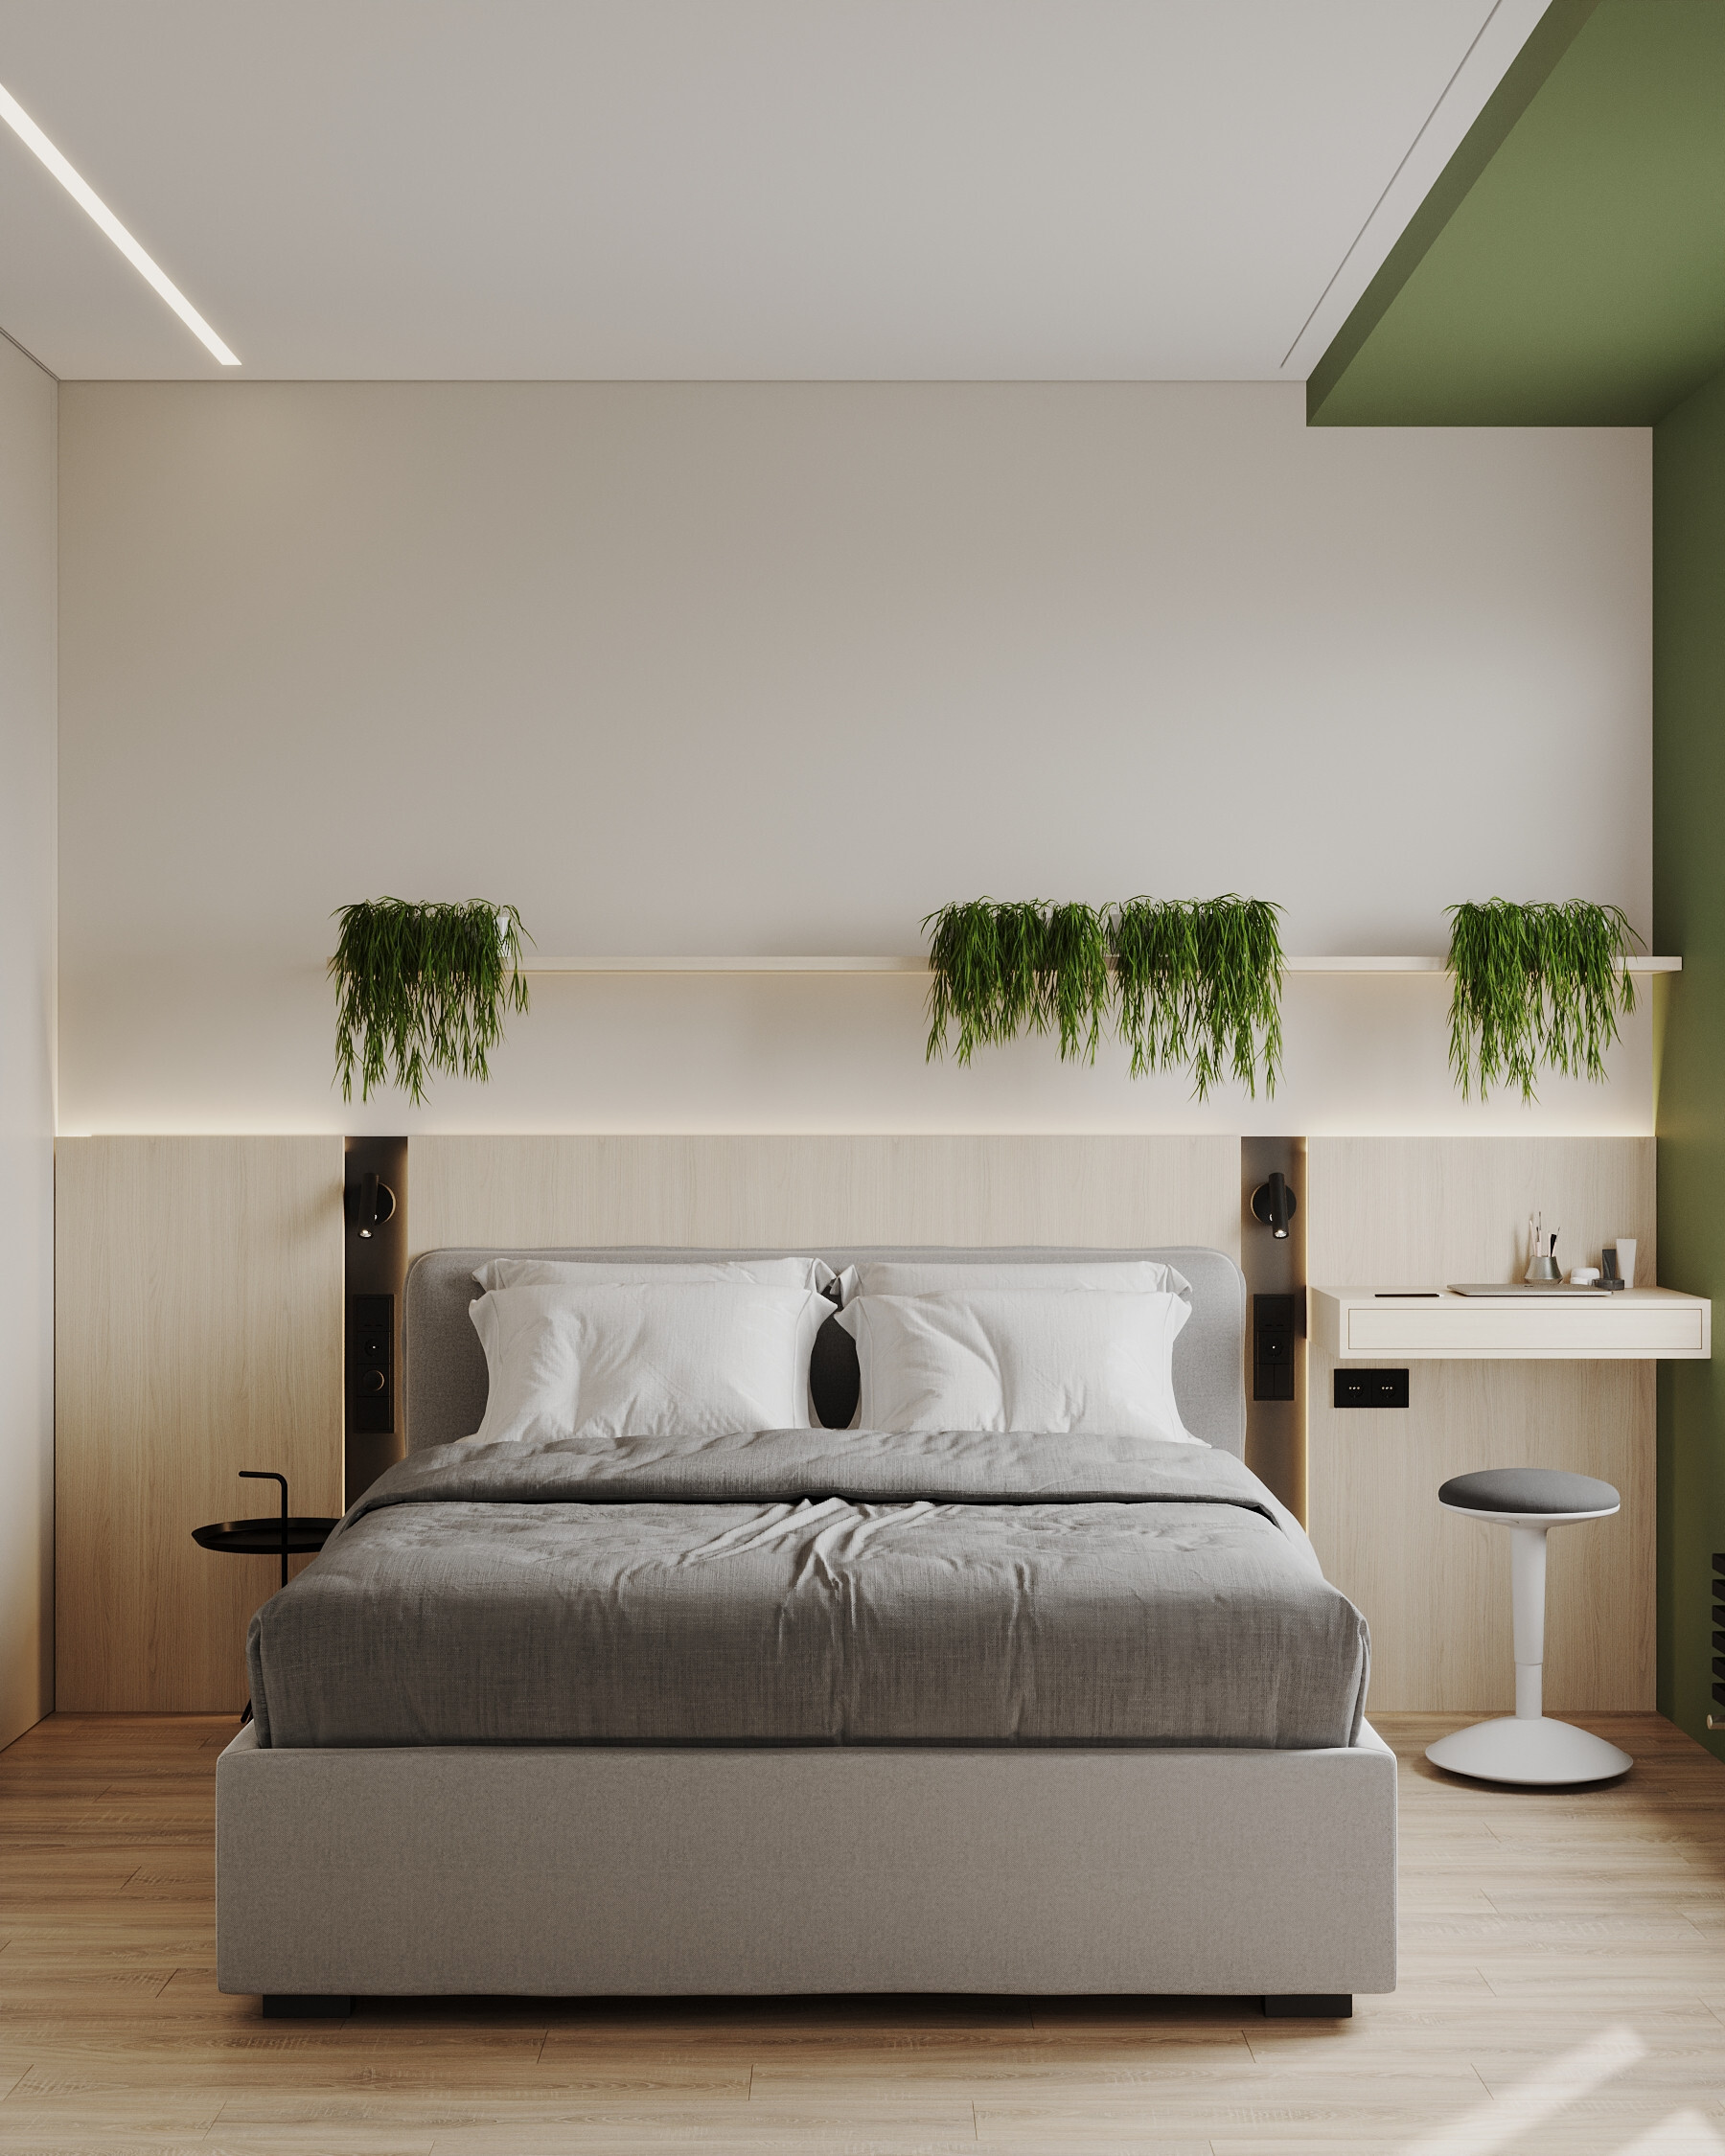 Интерьер спальни с рейками с подсветкой в современном стиле